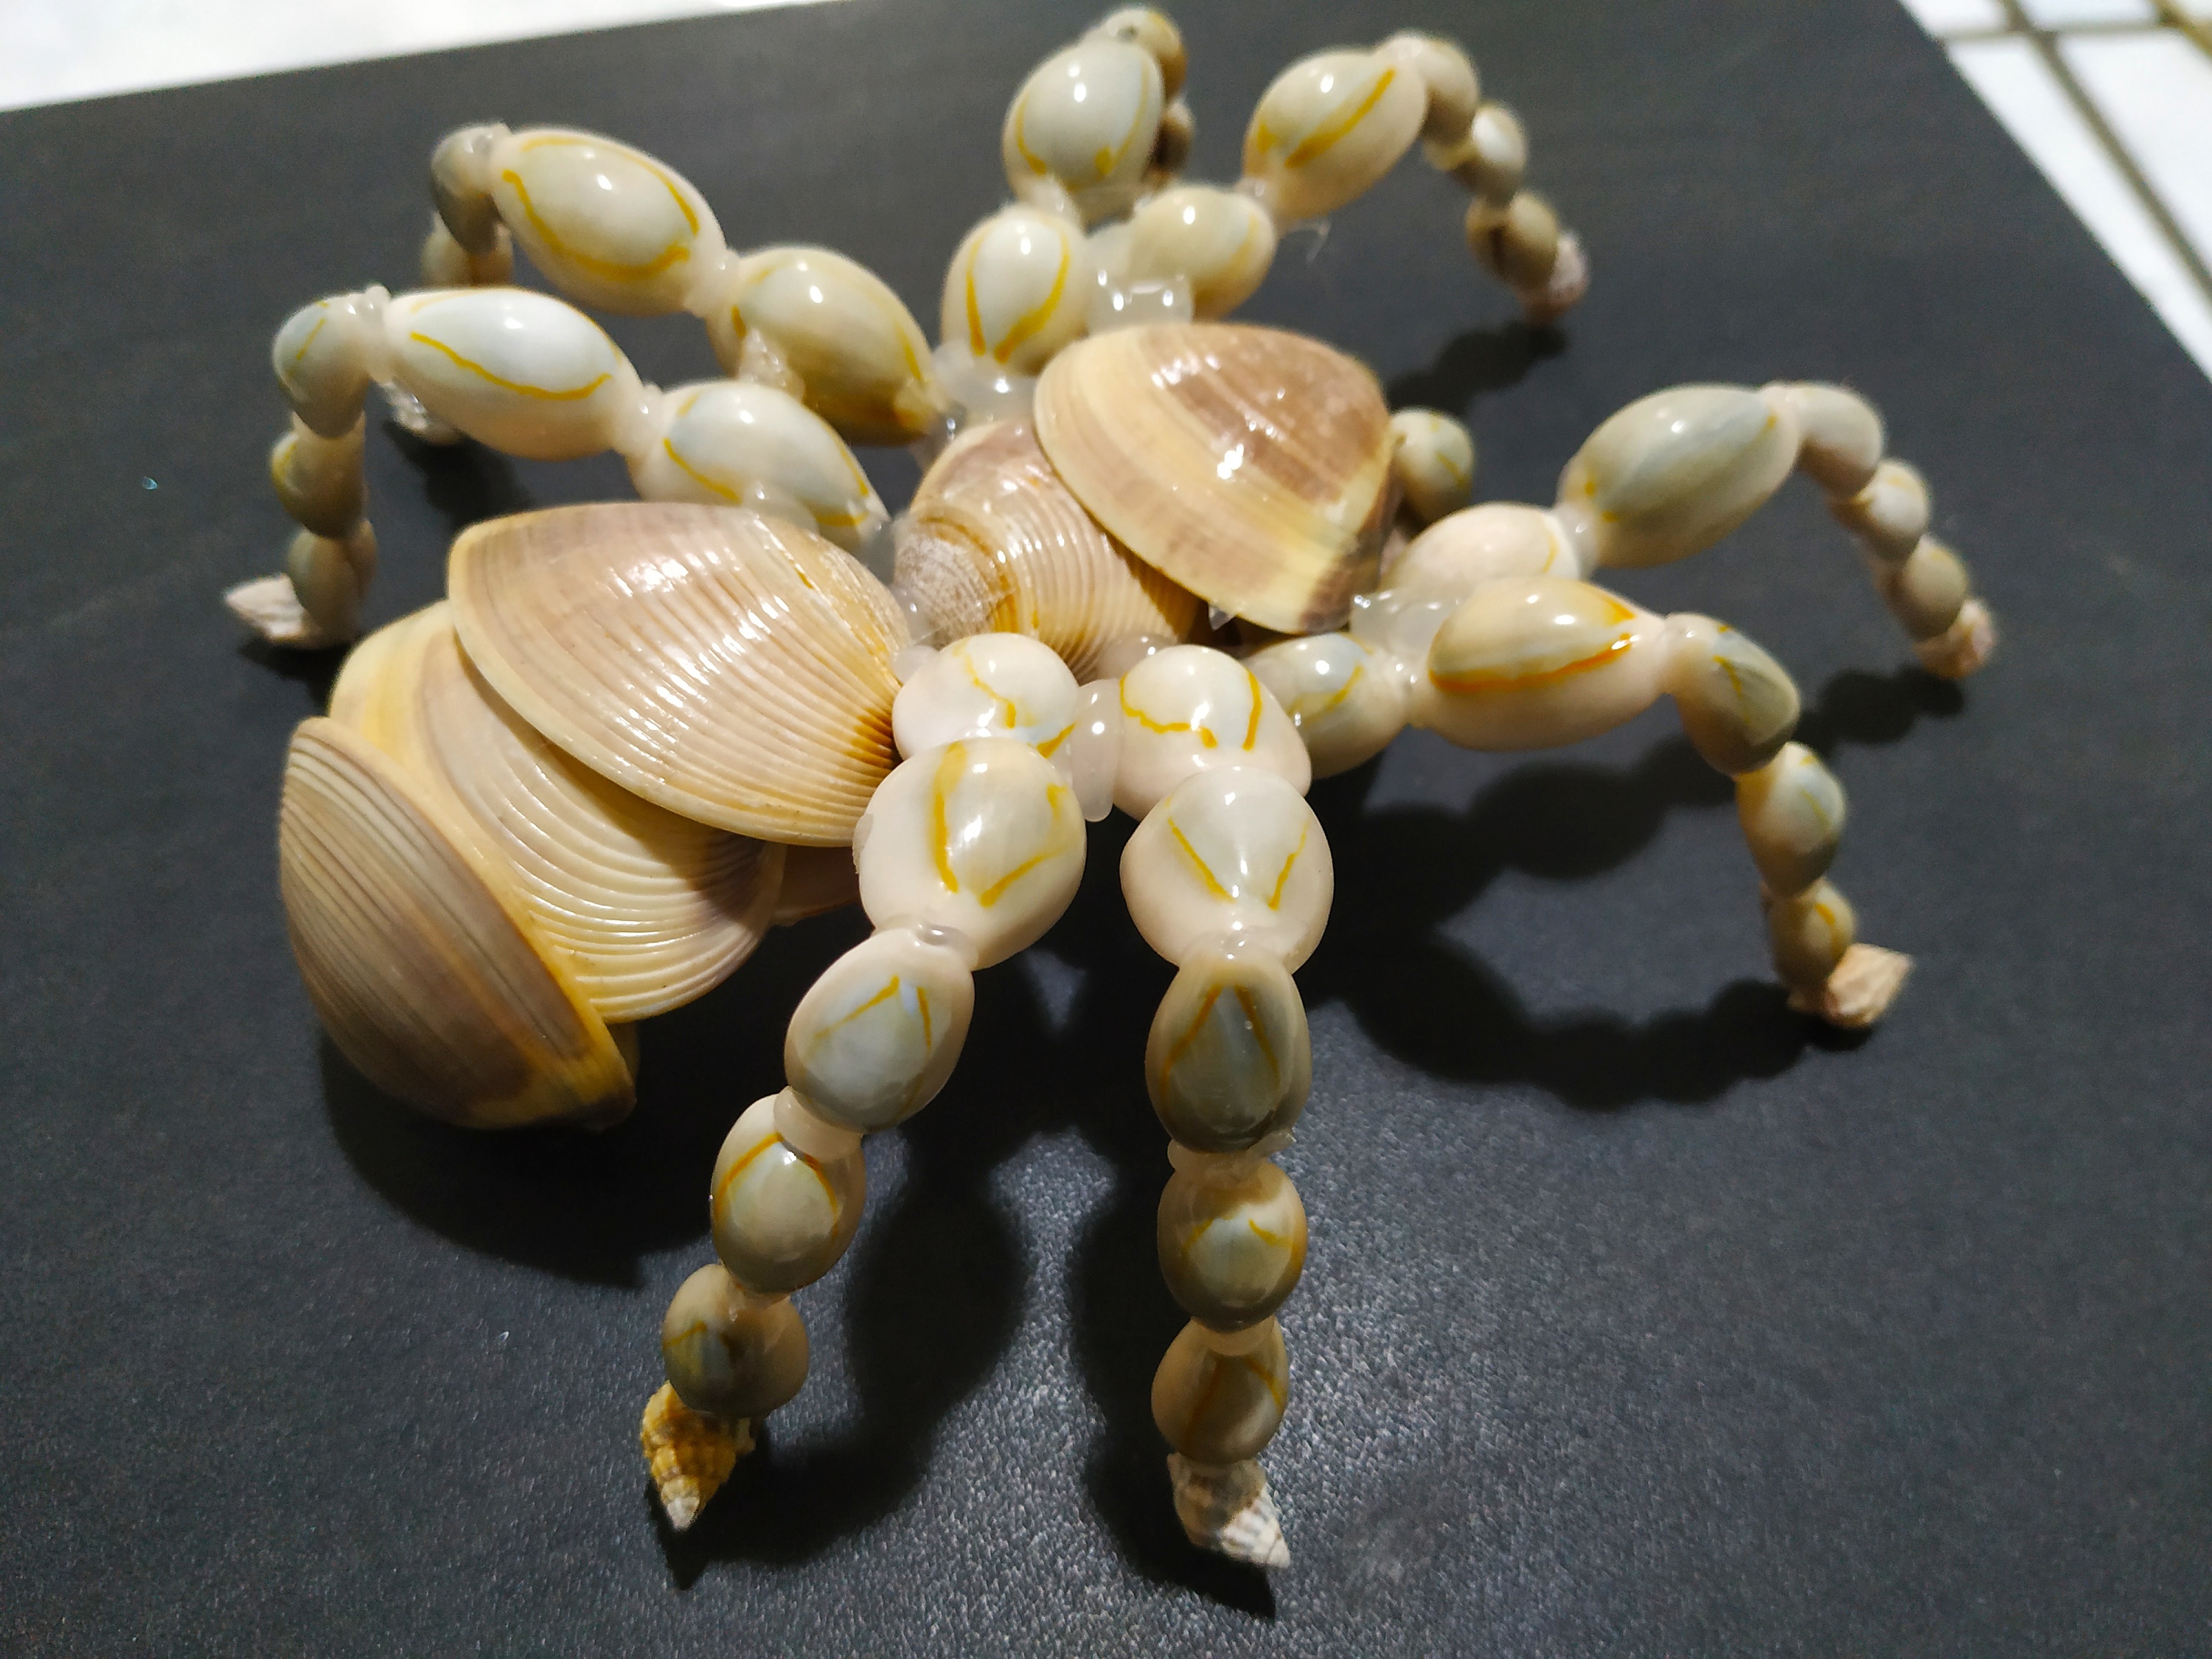 儿童益智手工DIY天然贝壳海螺贴画材料包 创意手工粘贴圆盘画礼物-阿里巴巴